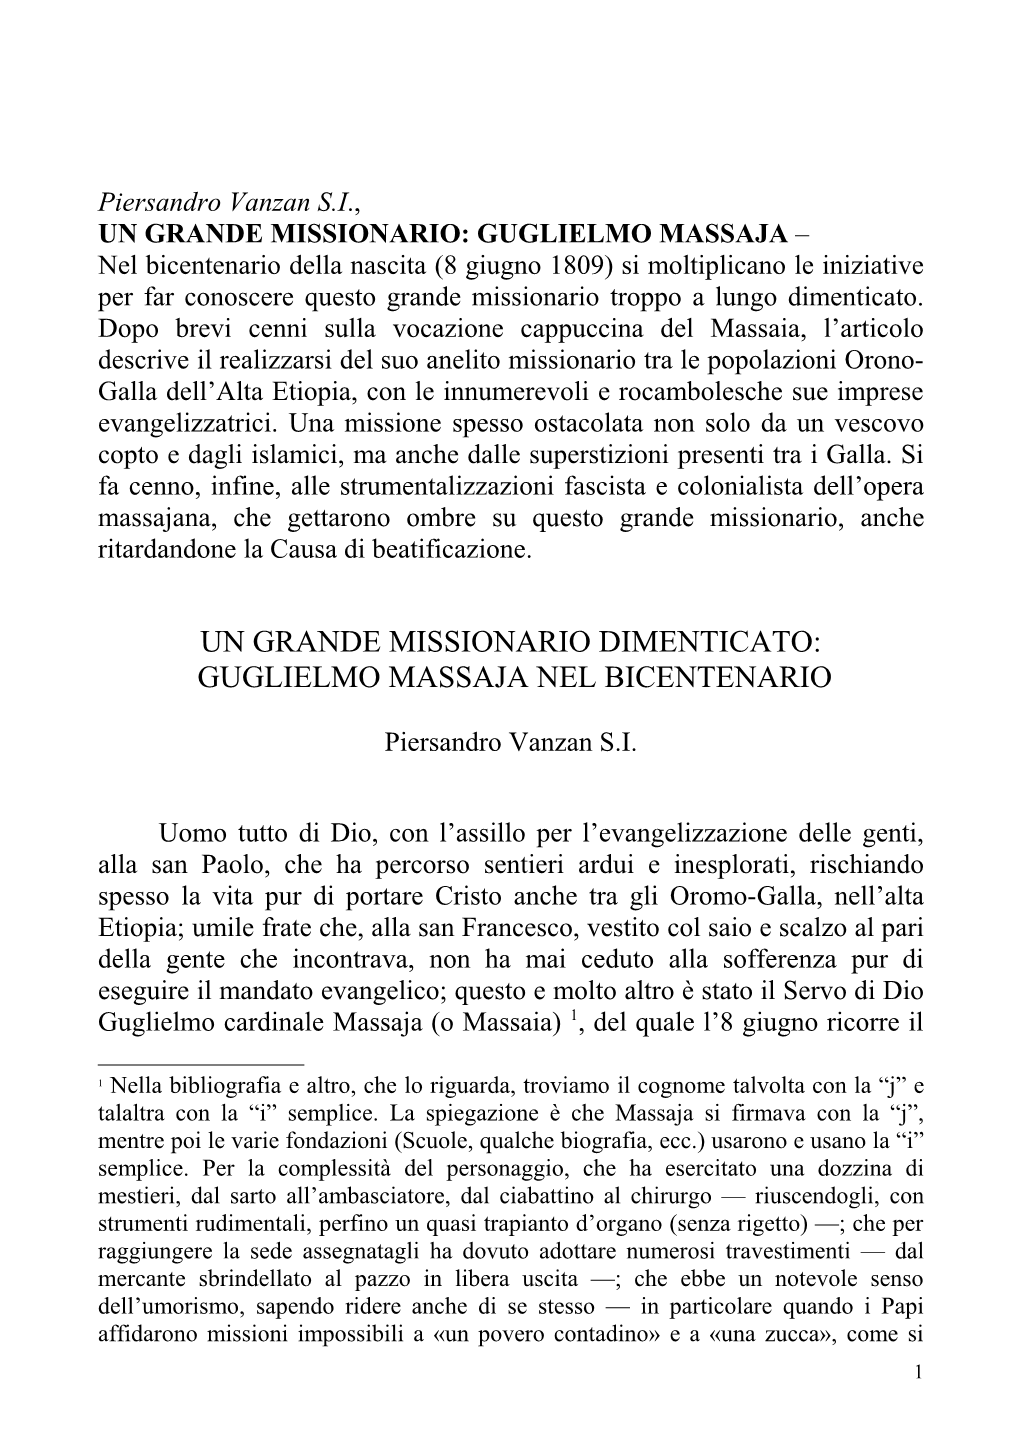 Guglielmo Massaia Un Santo Dimenticato, Milano, Gribaudi, 2009, 13-15 E 170-179, Mentre a P